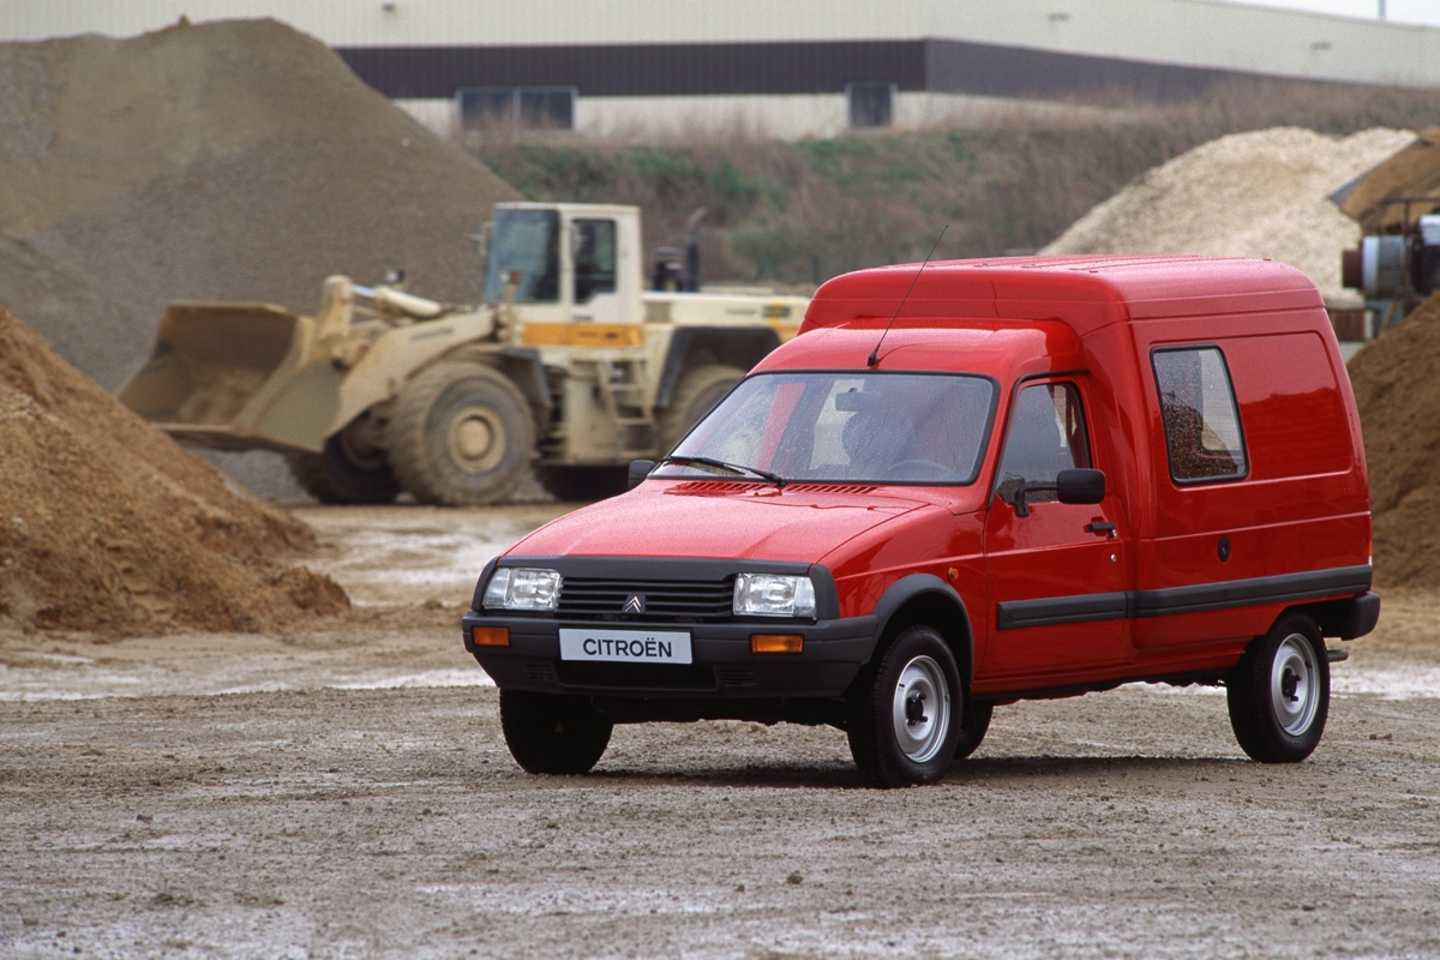 Citroën C15 rouge sur un chantier